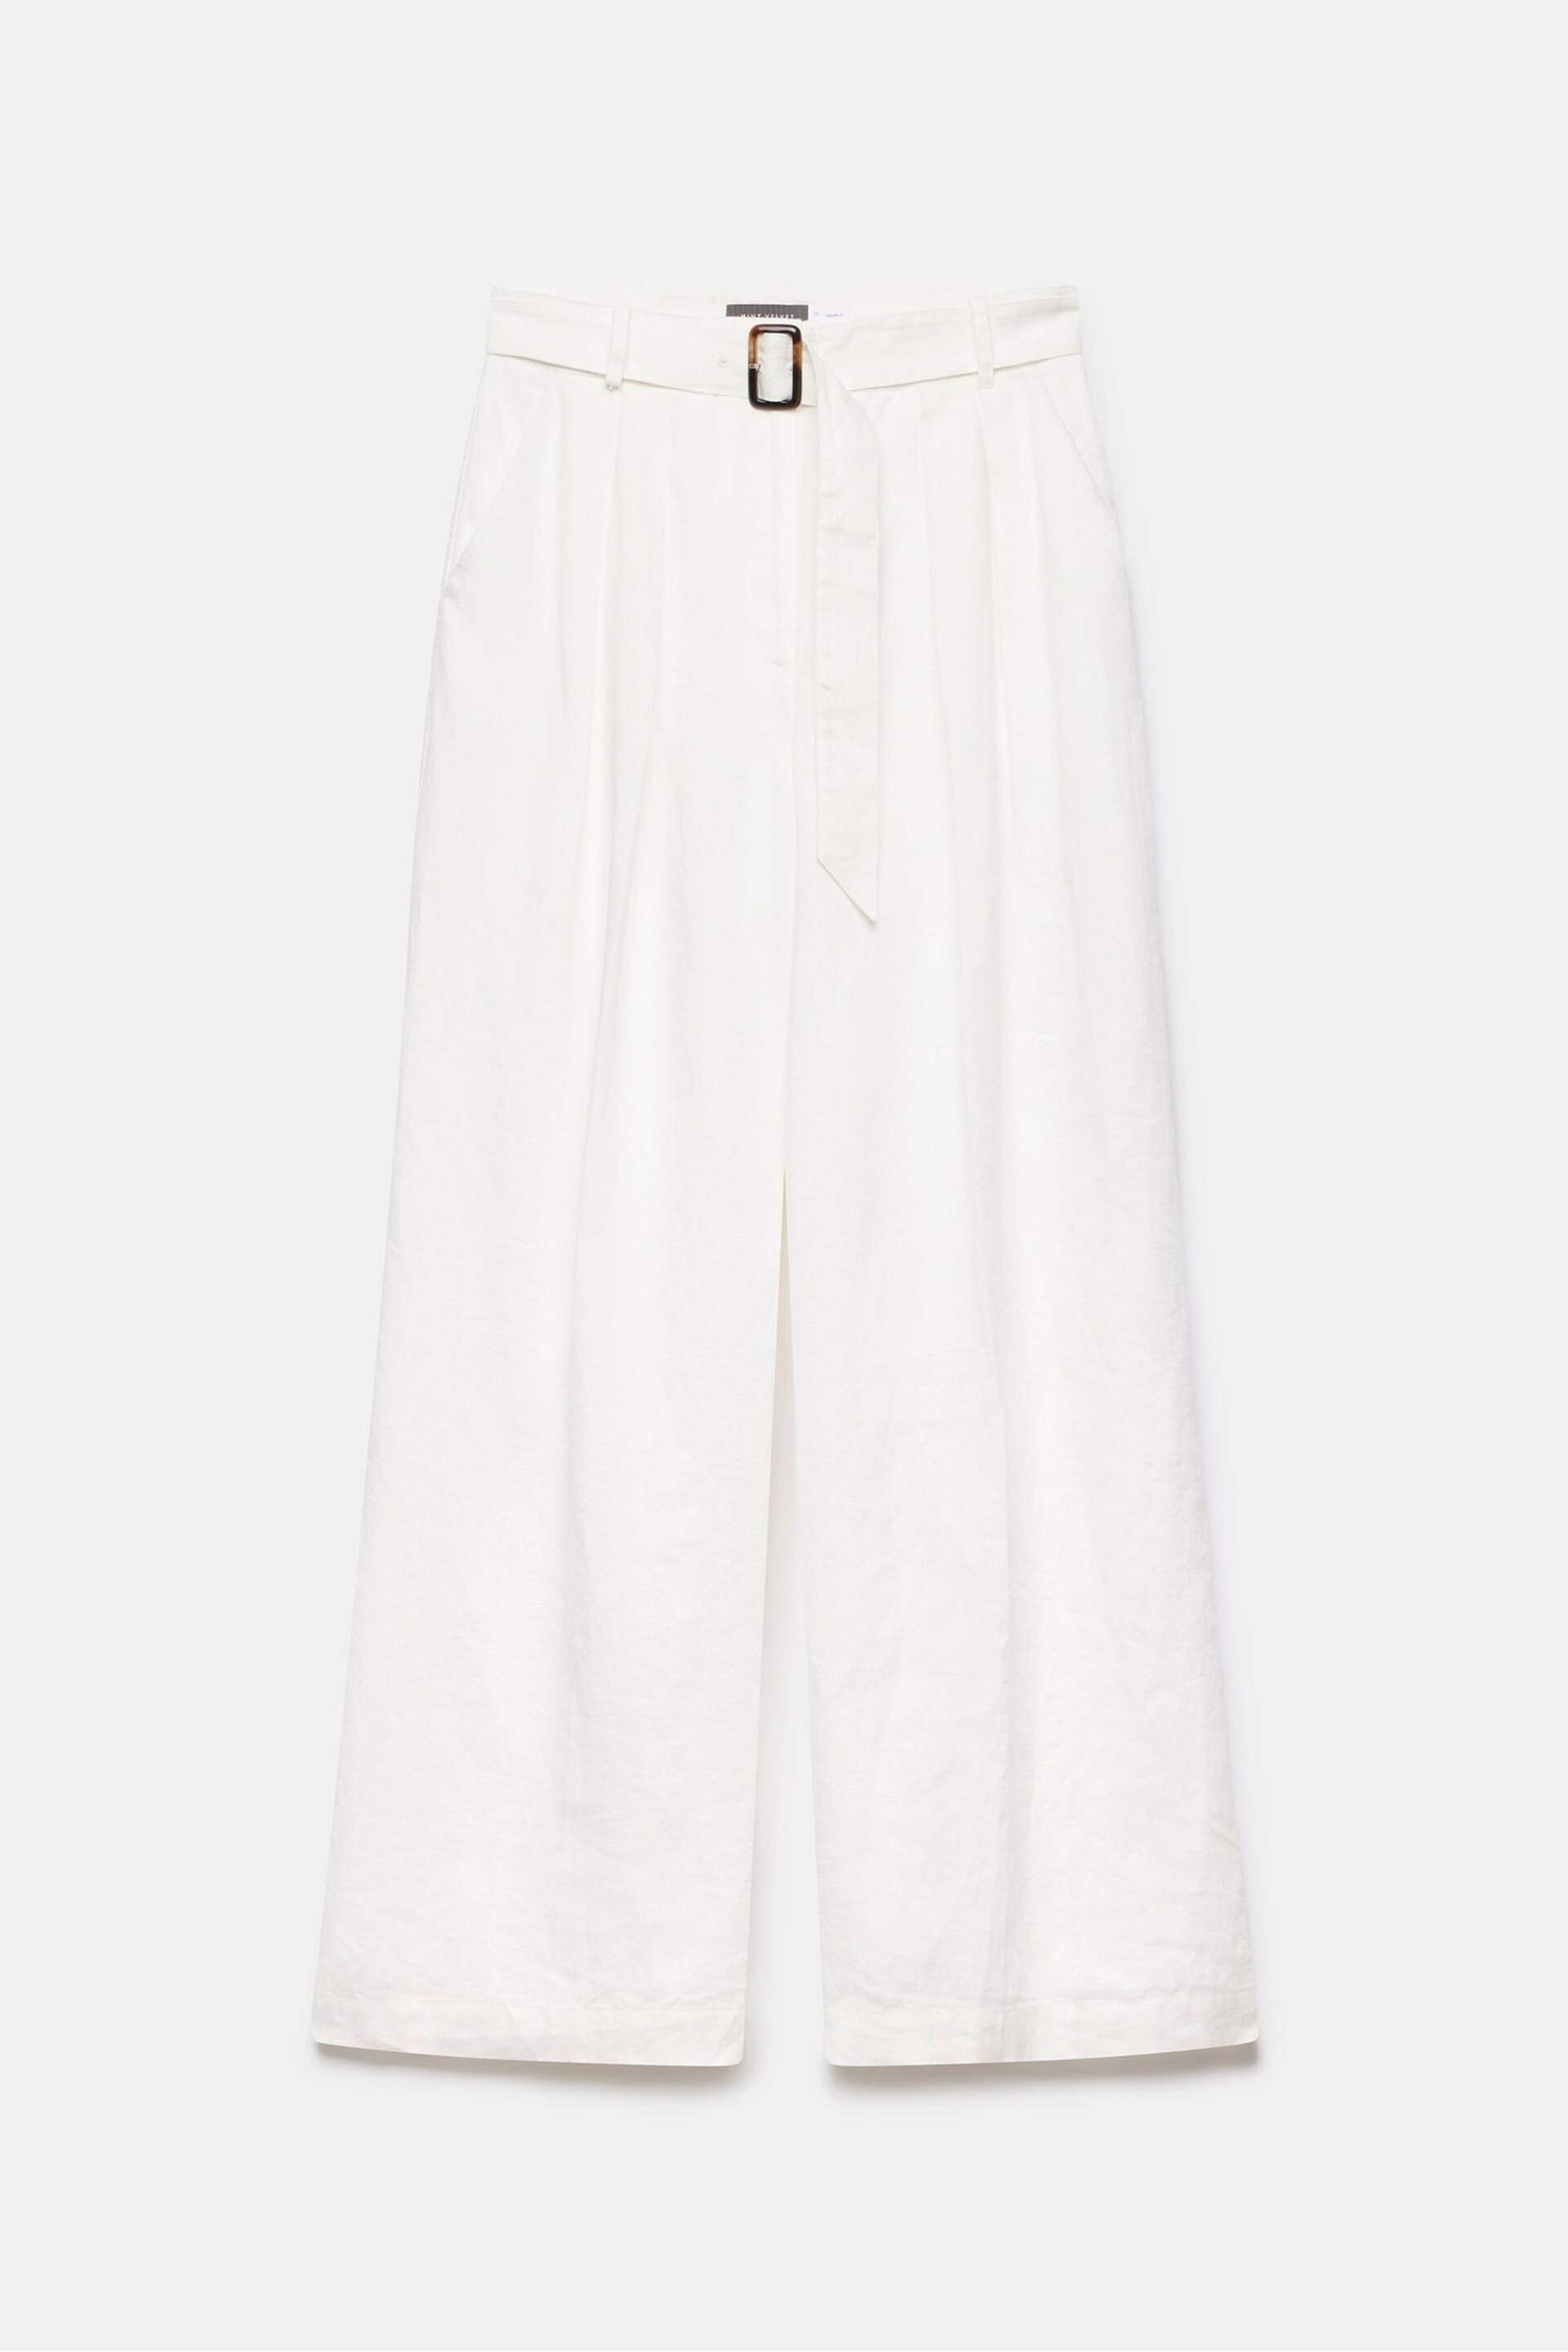 Mint Velvet White Linen Belt Wide Trousers - Image 3 of 4